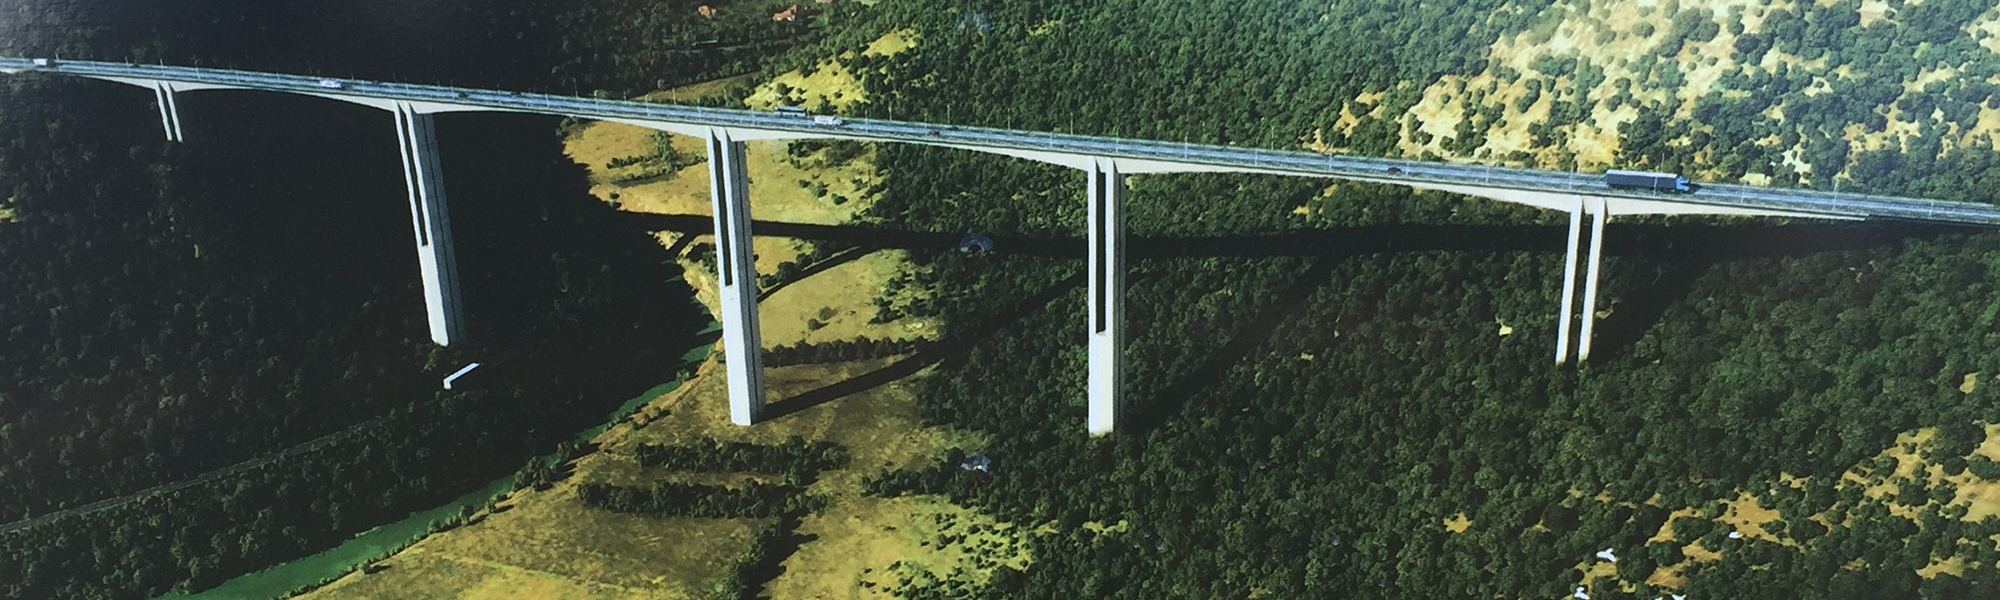 Bar-Boljare highway viaducts